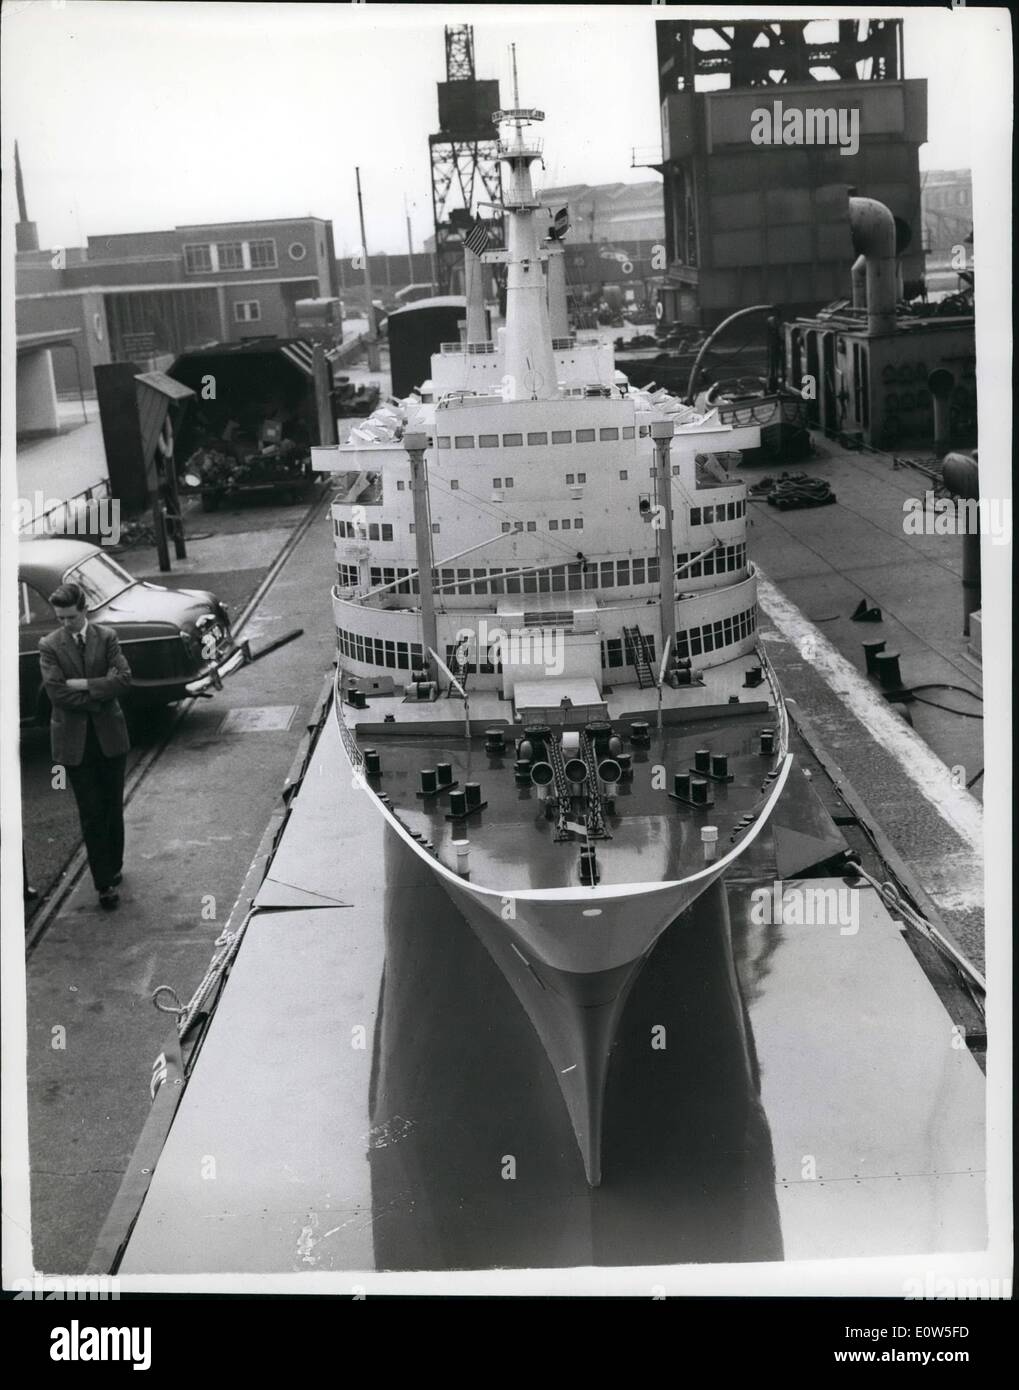 07 juillet 1961 - le plus grand navire à ne jamais flotter « en-bas » à Londres ; le plus grand navire à ne jamais flotter est arrivé ce matin aux quais de Londres - mais il était à bord d'un autre navire. Le navire est un modèle de deux tonnes, 40 pieds de la Hollande - l'America liner Rotterdam, a déclaré être le plus grand modèle de navire au monde, le ''Little'' coûte environ 3,500 et sera en démonstration pendant trois mois à Southend Pier. La photo montre le modèle Rotterdam sur une bande-annonce en route vers Southend depuis les quais de Londres ce matin. Banque D'Images